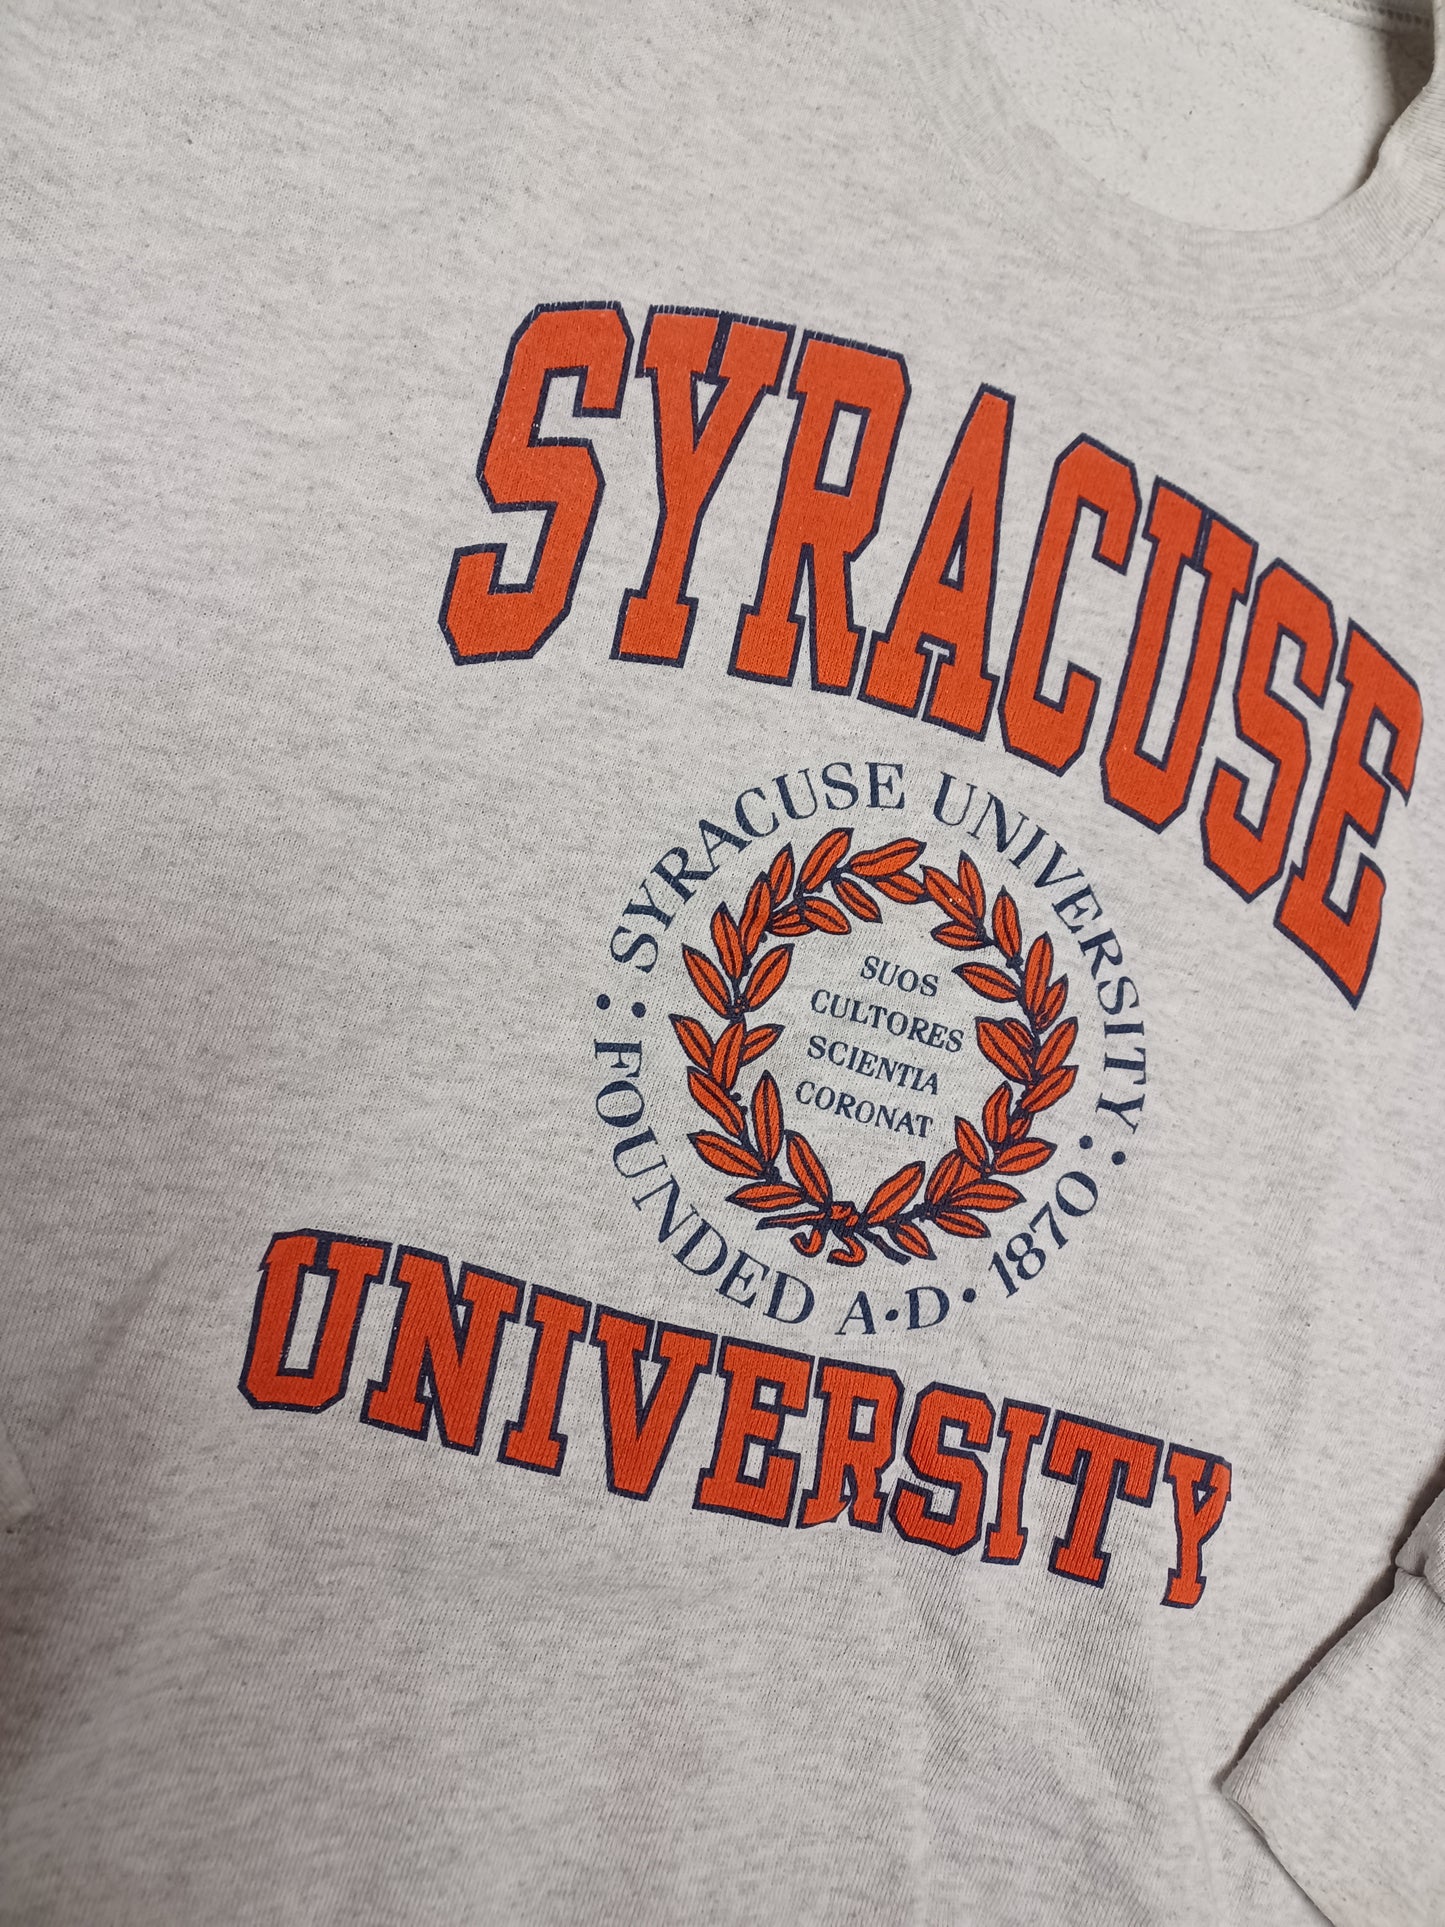 Syracuse University Sweater Size Large